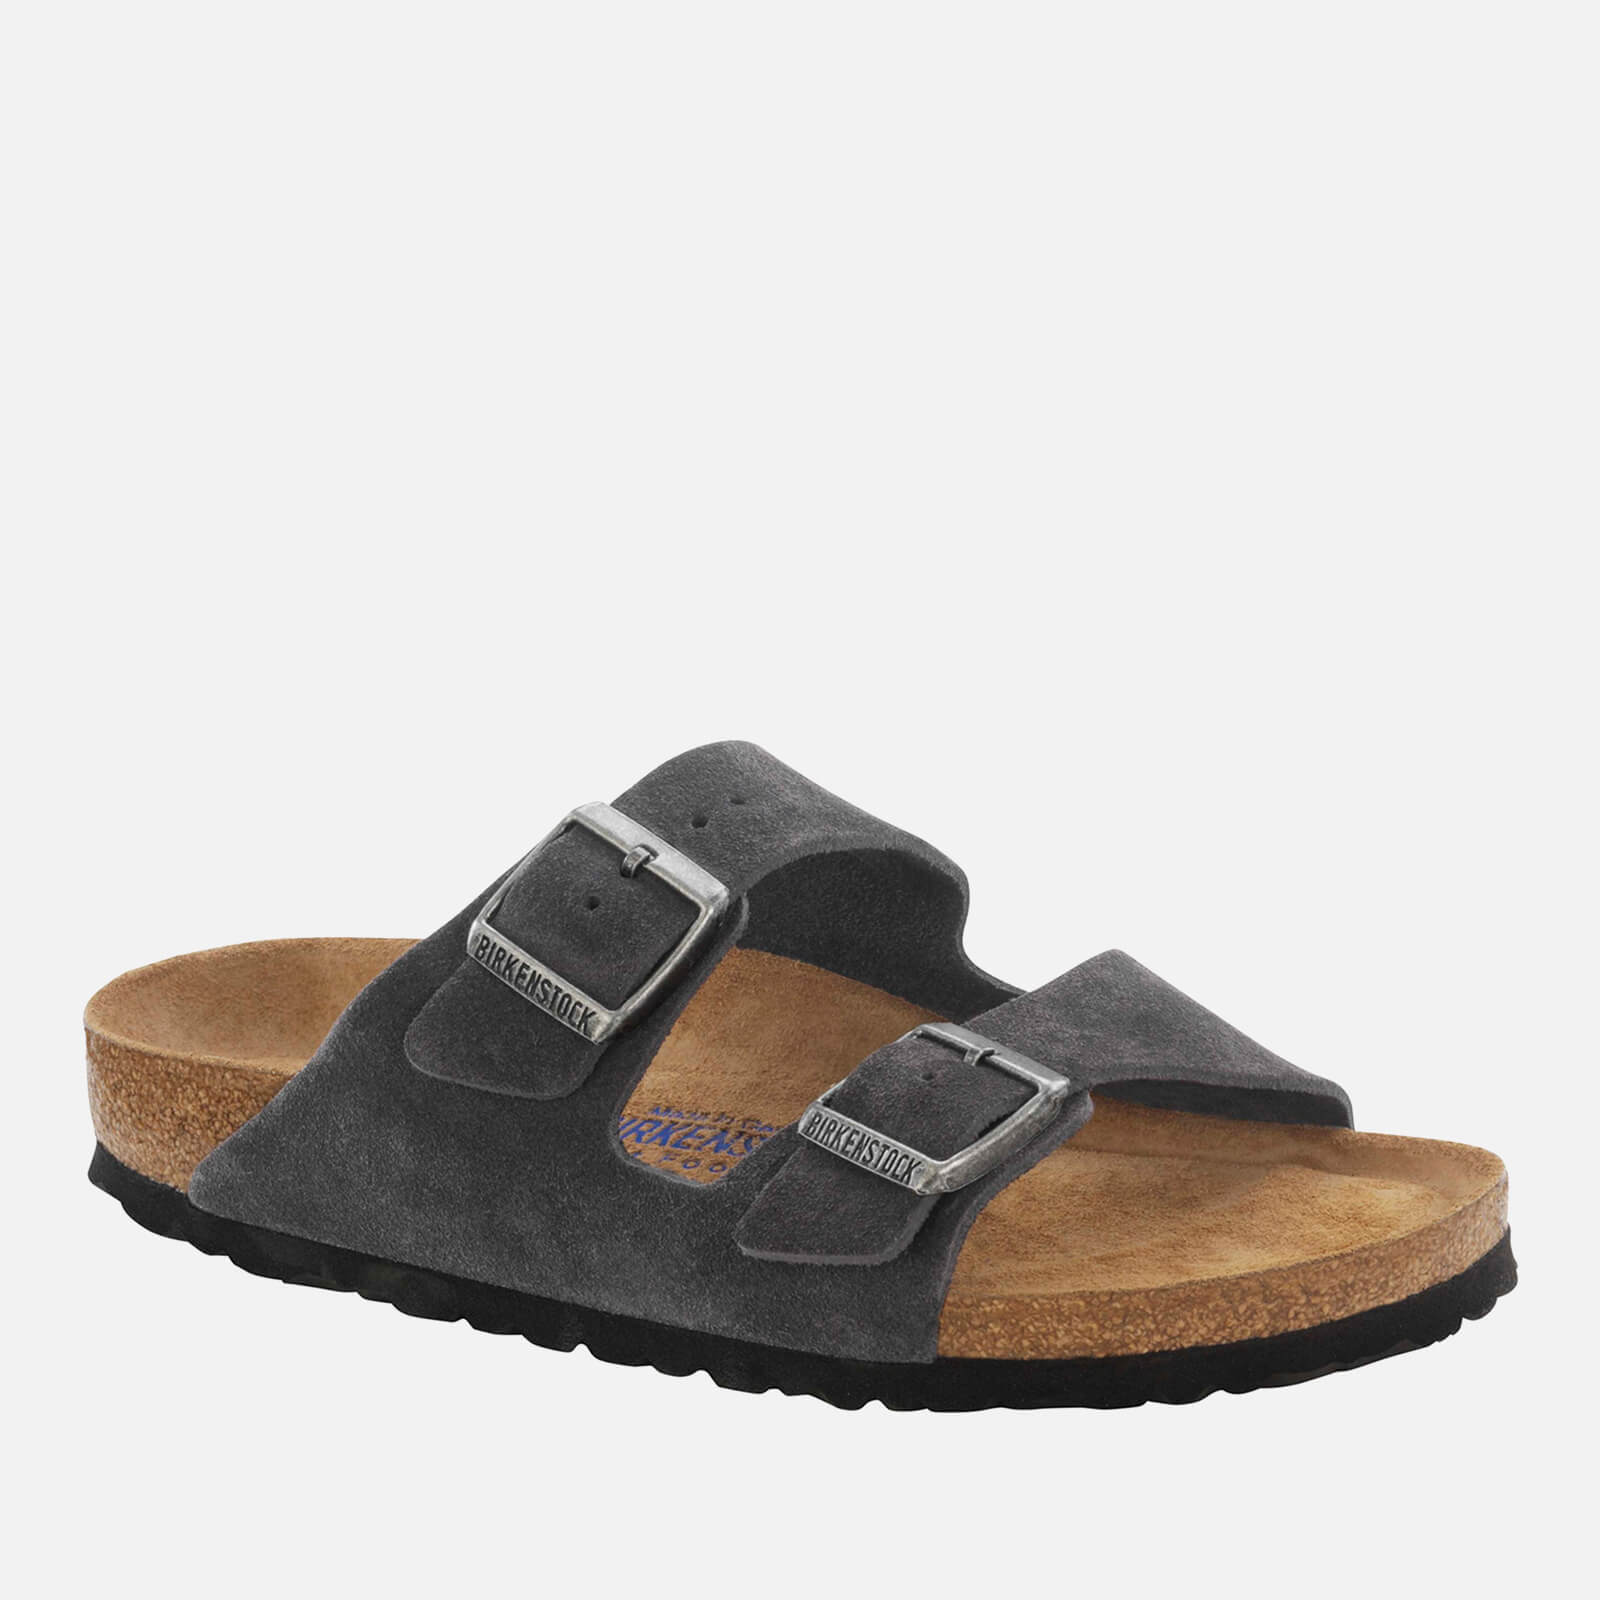 birkenstock men's arizona suede double strap sandals - uk 9